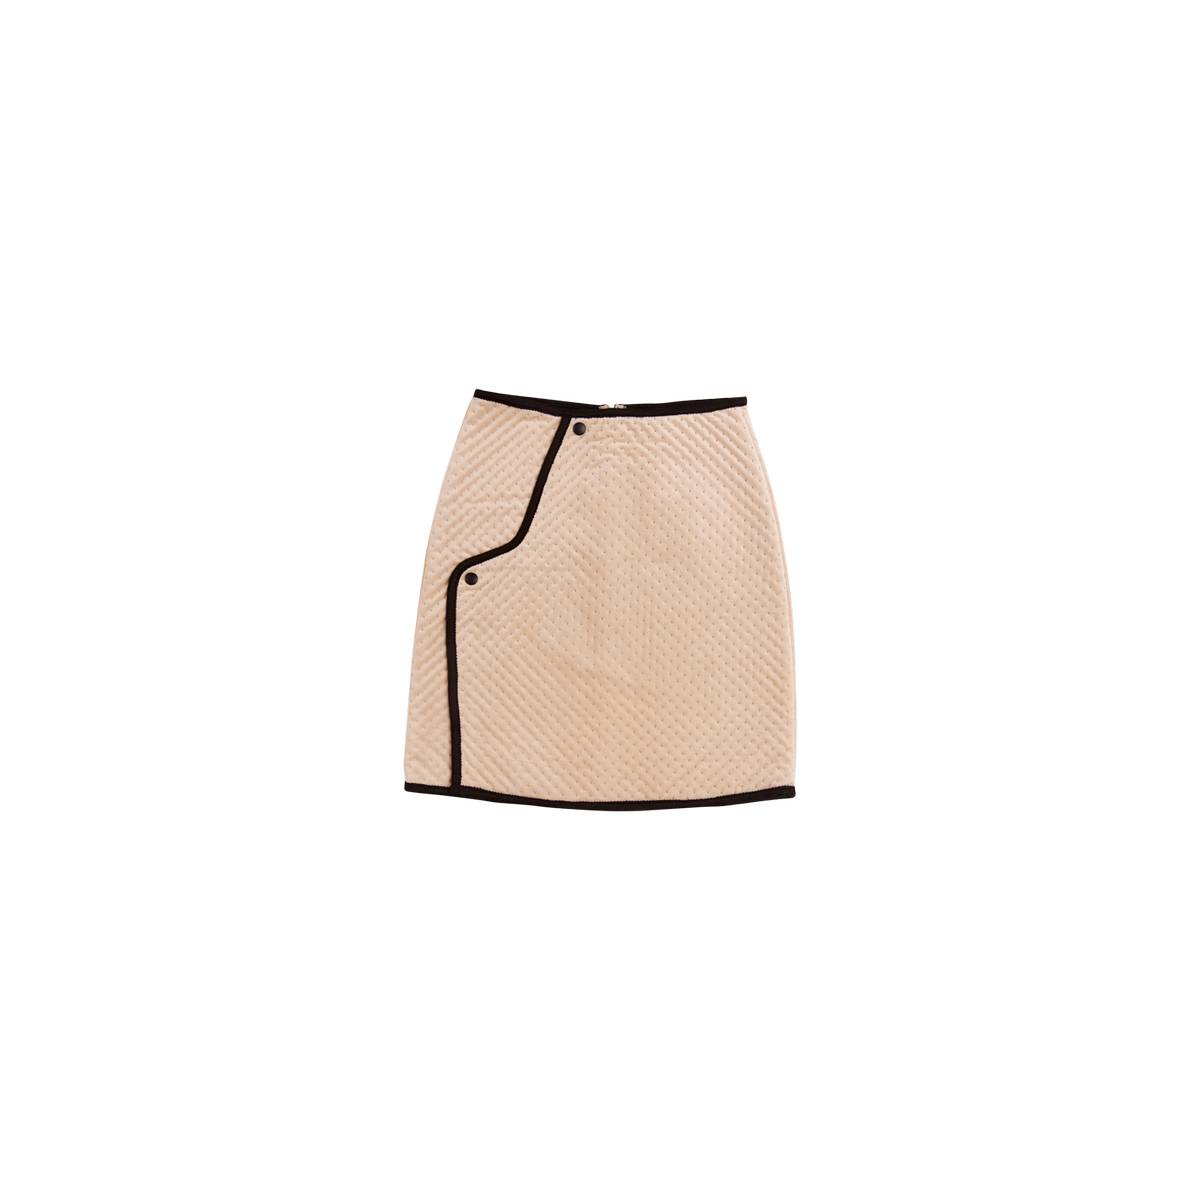 velvet quilted skirt